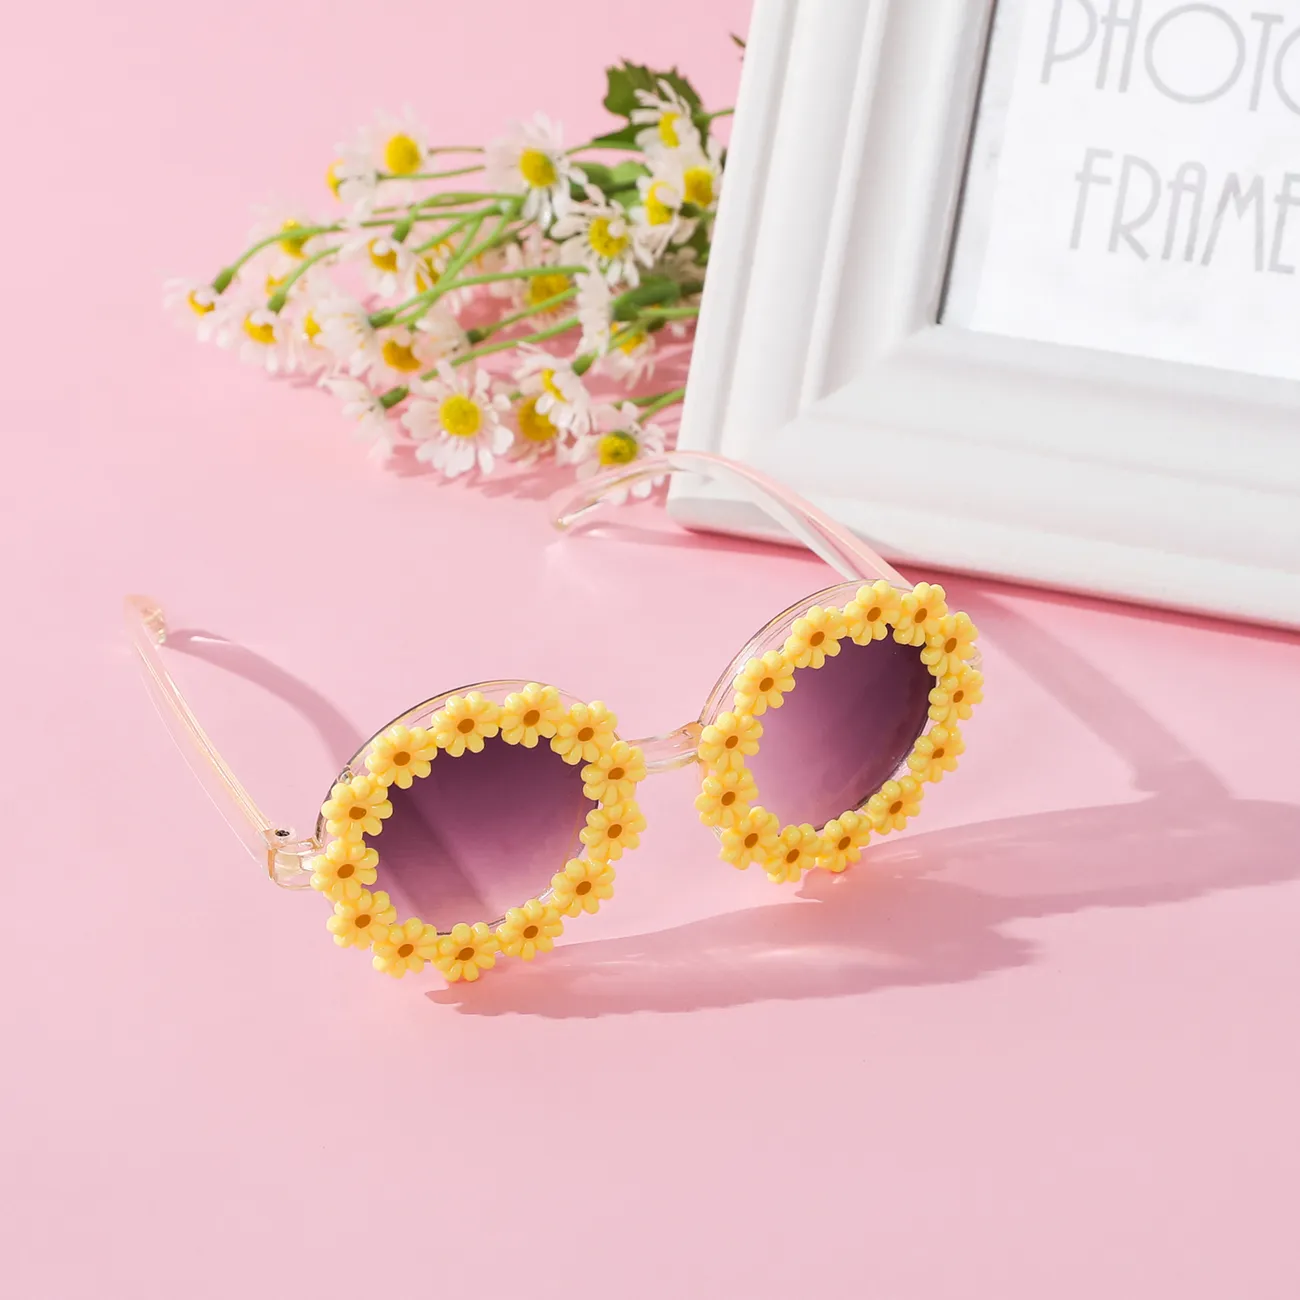 Kleinkind- / Kinderbrille Gänseblümchen runder Rahmen Blumenform dekorative Brille gelb big image 1